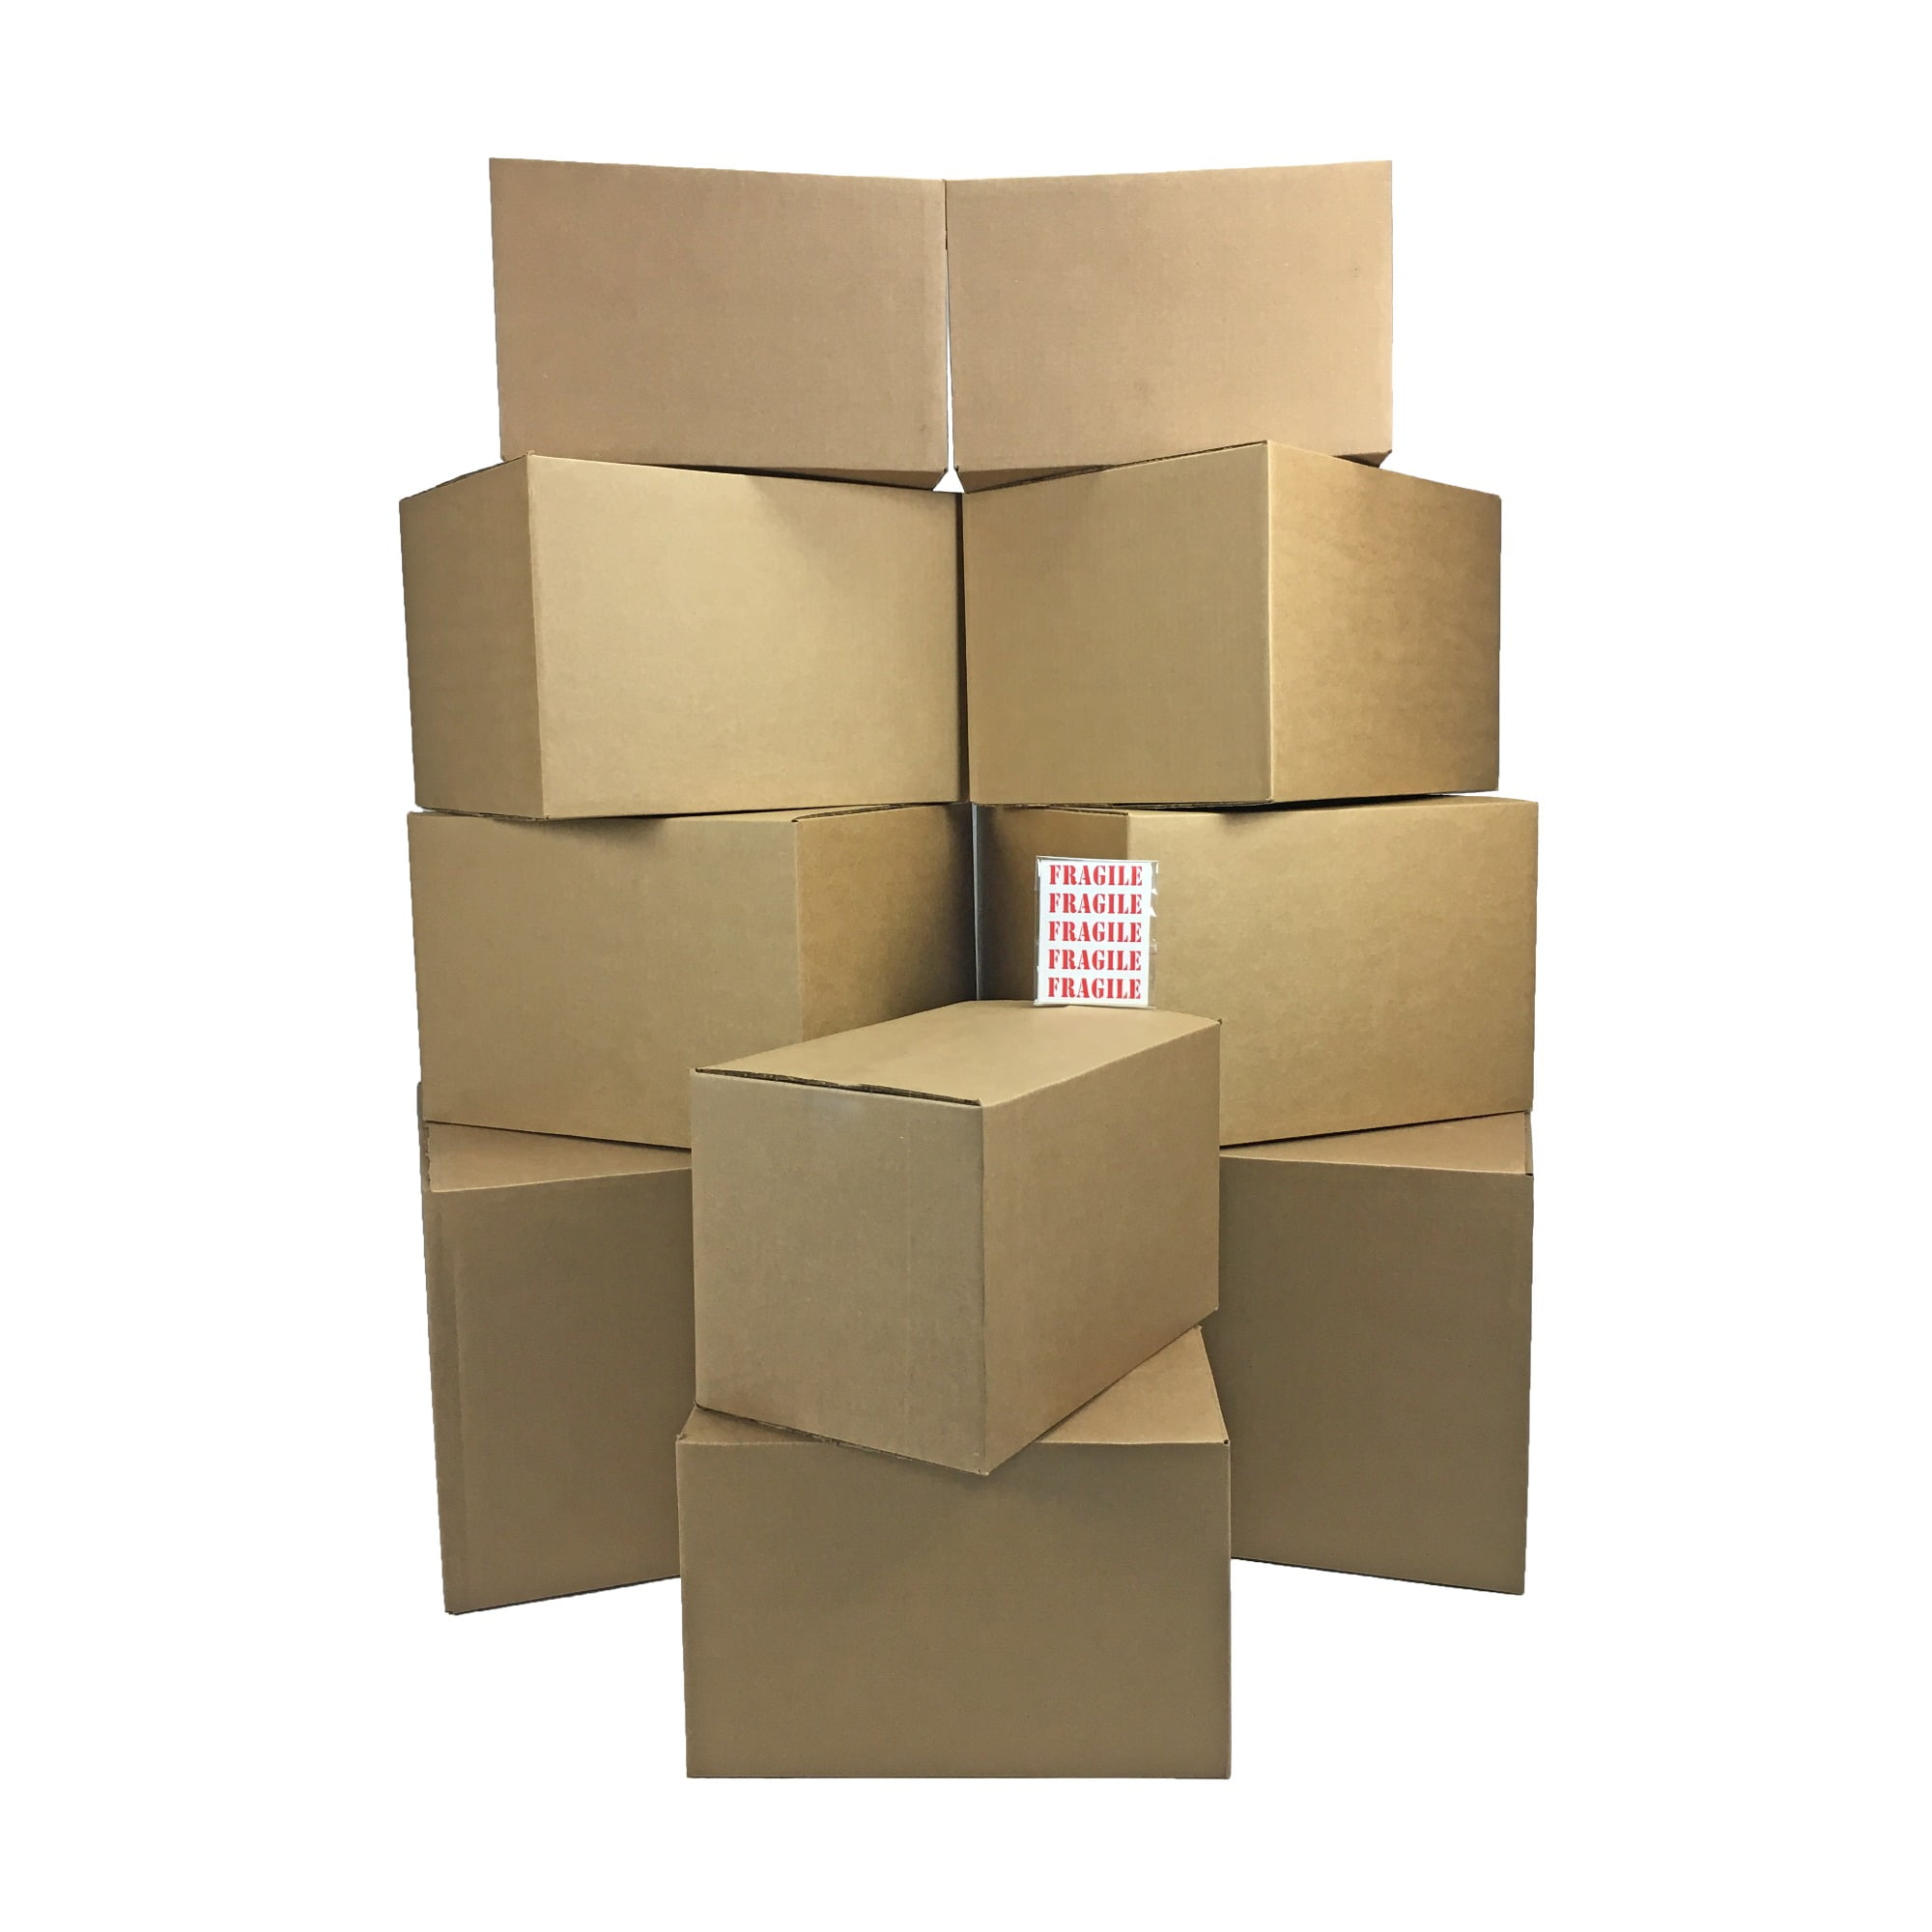 1 Moving Shipping Box Combo Pack, 1 Kit (MBOMBO1)